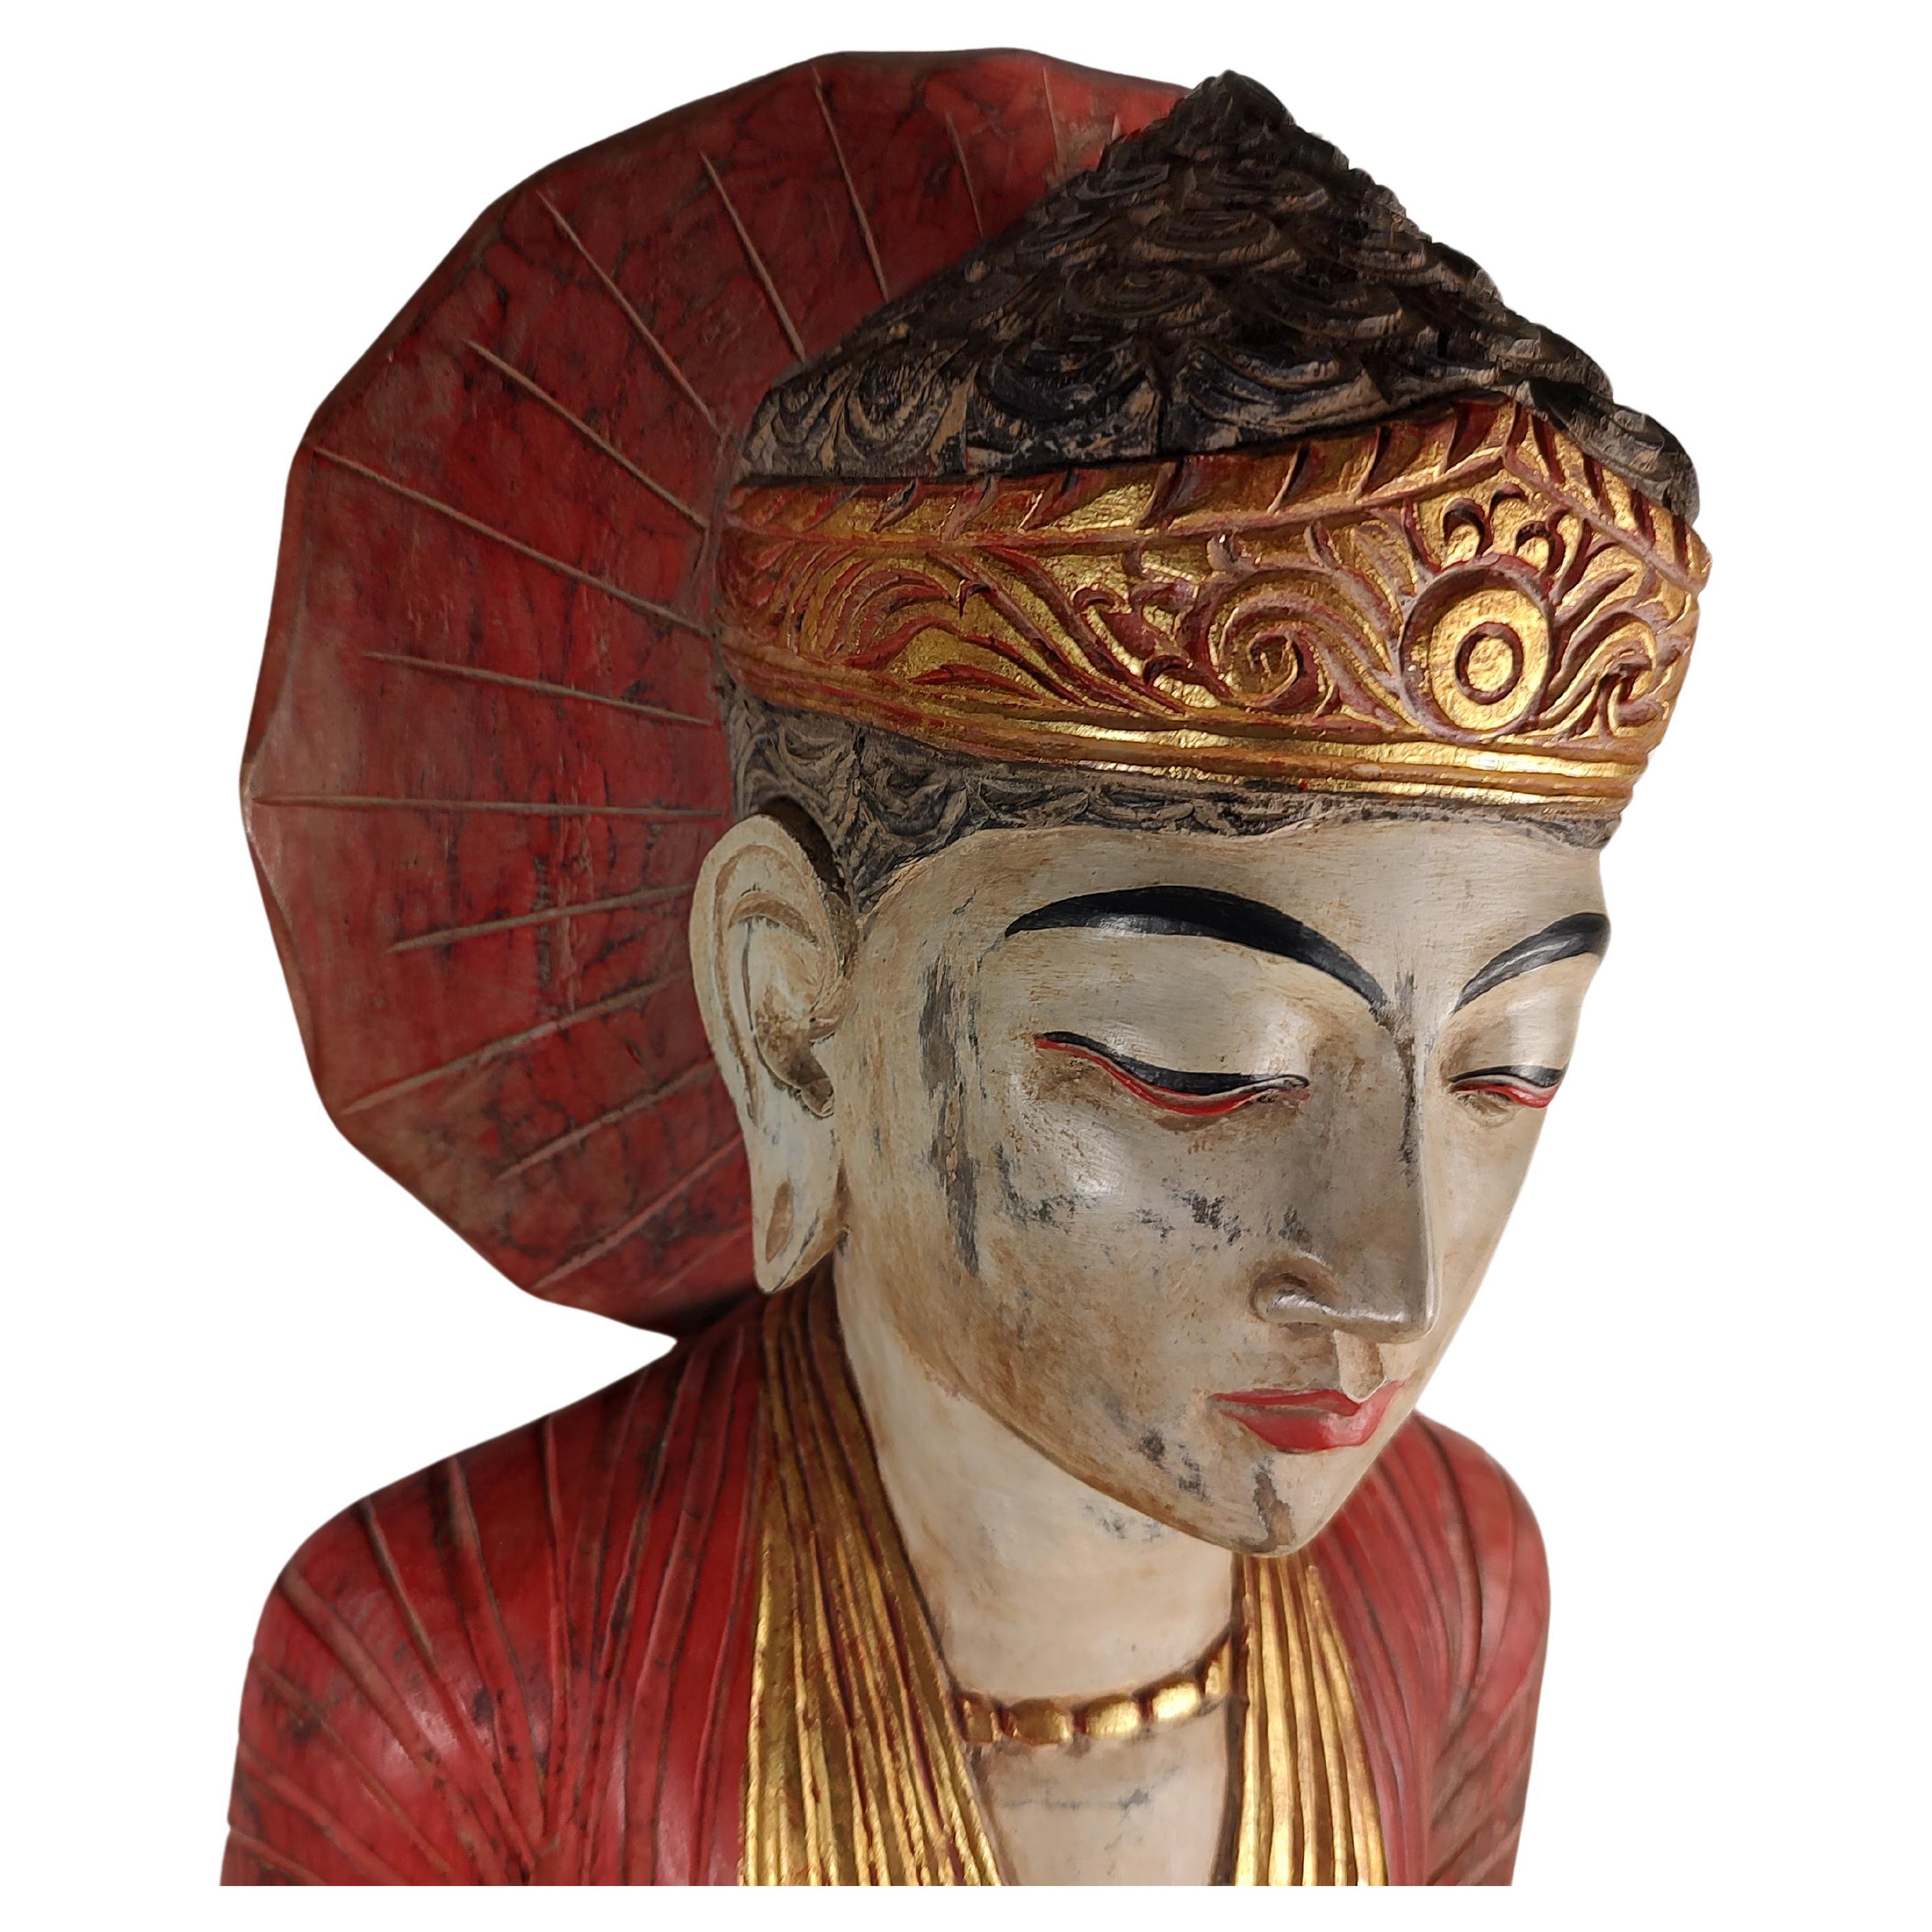 Fabuleux Bouddha en bois de 40 pouces, sculpté et peint à la main. Décorations polychromes avec dorure.
De couleurs vives et en prière. Lourd et bien exécuté. En excellent état vintage avec une usure minimale. Peut être envoyé par colis.